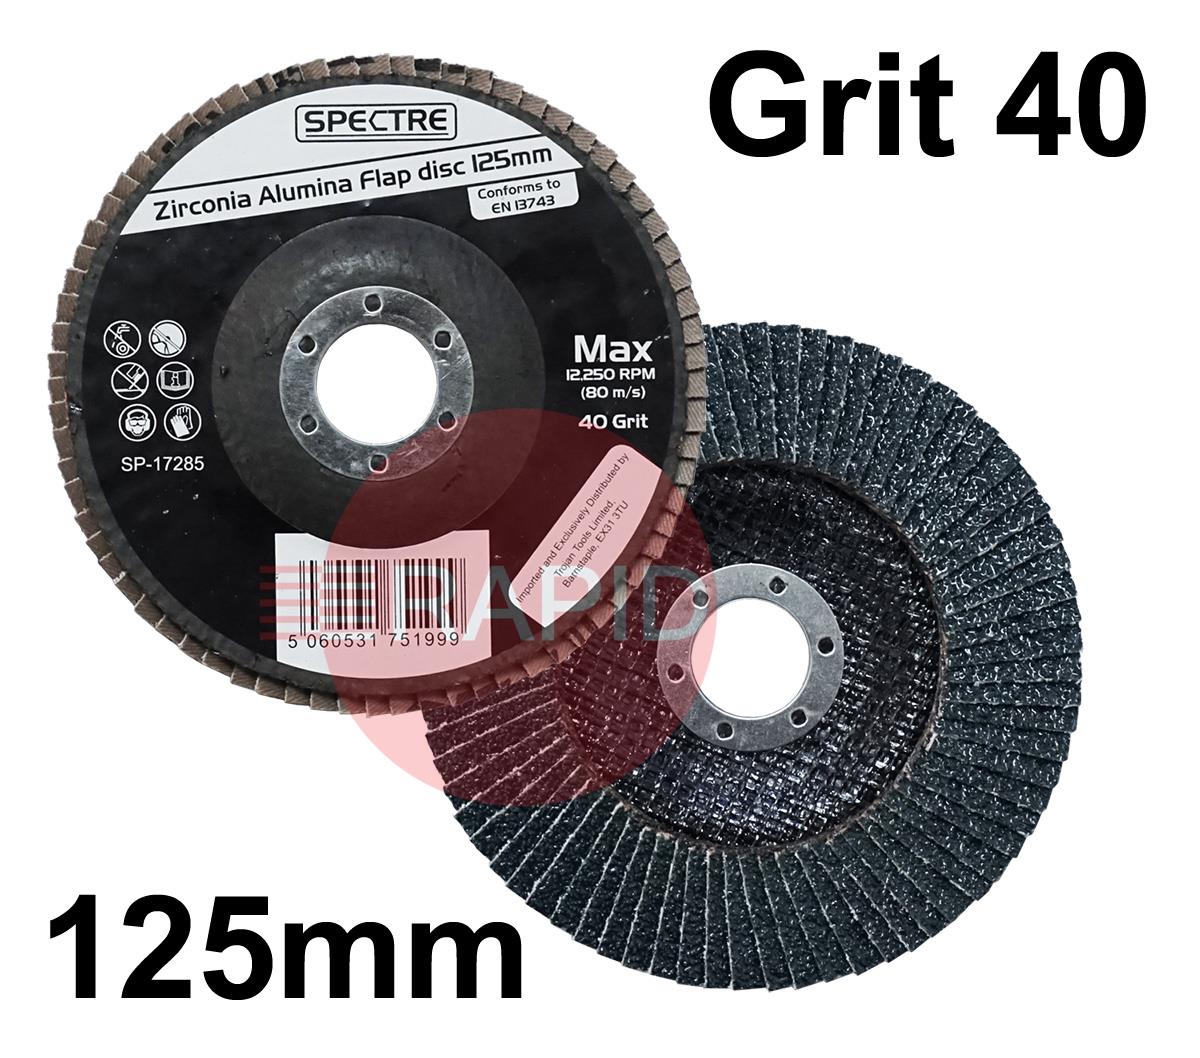 SP-17285  Spectre 125mm (5) Zirconium Flap Disc - Grit 40